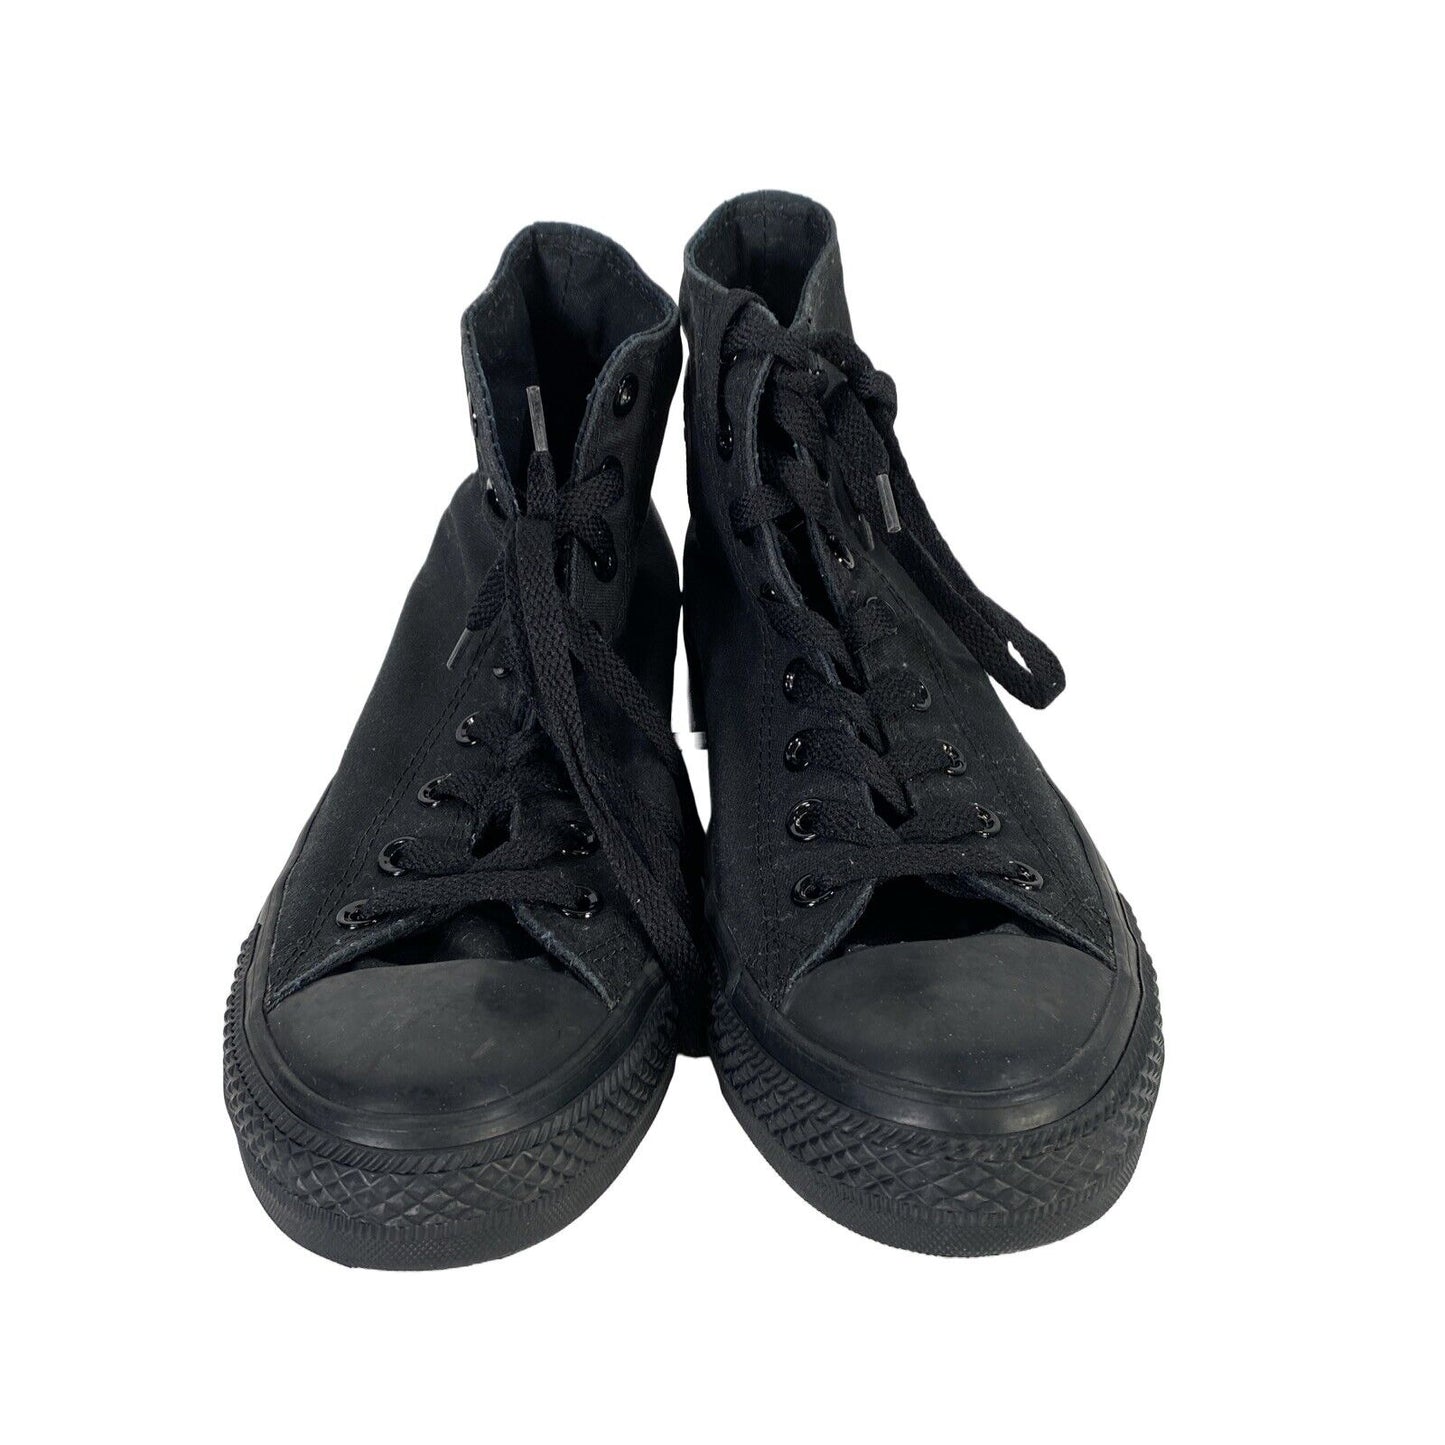 Converse Zapatillas altas unisex de lona negra con cordones - Hombre 9